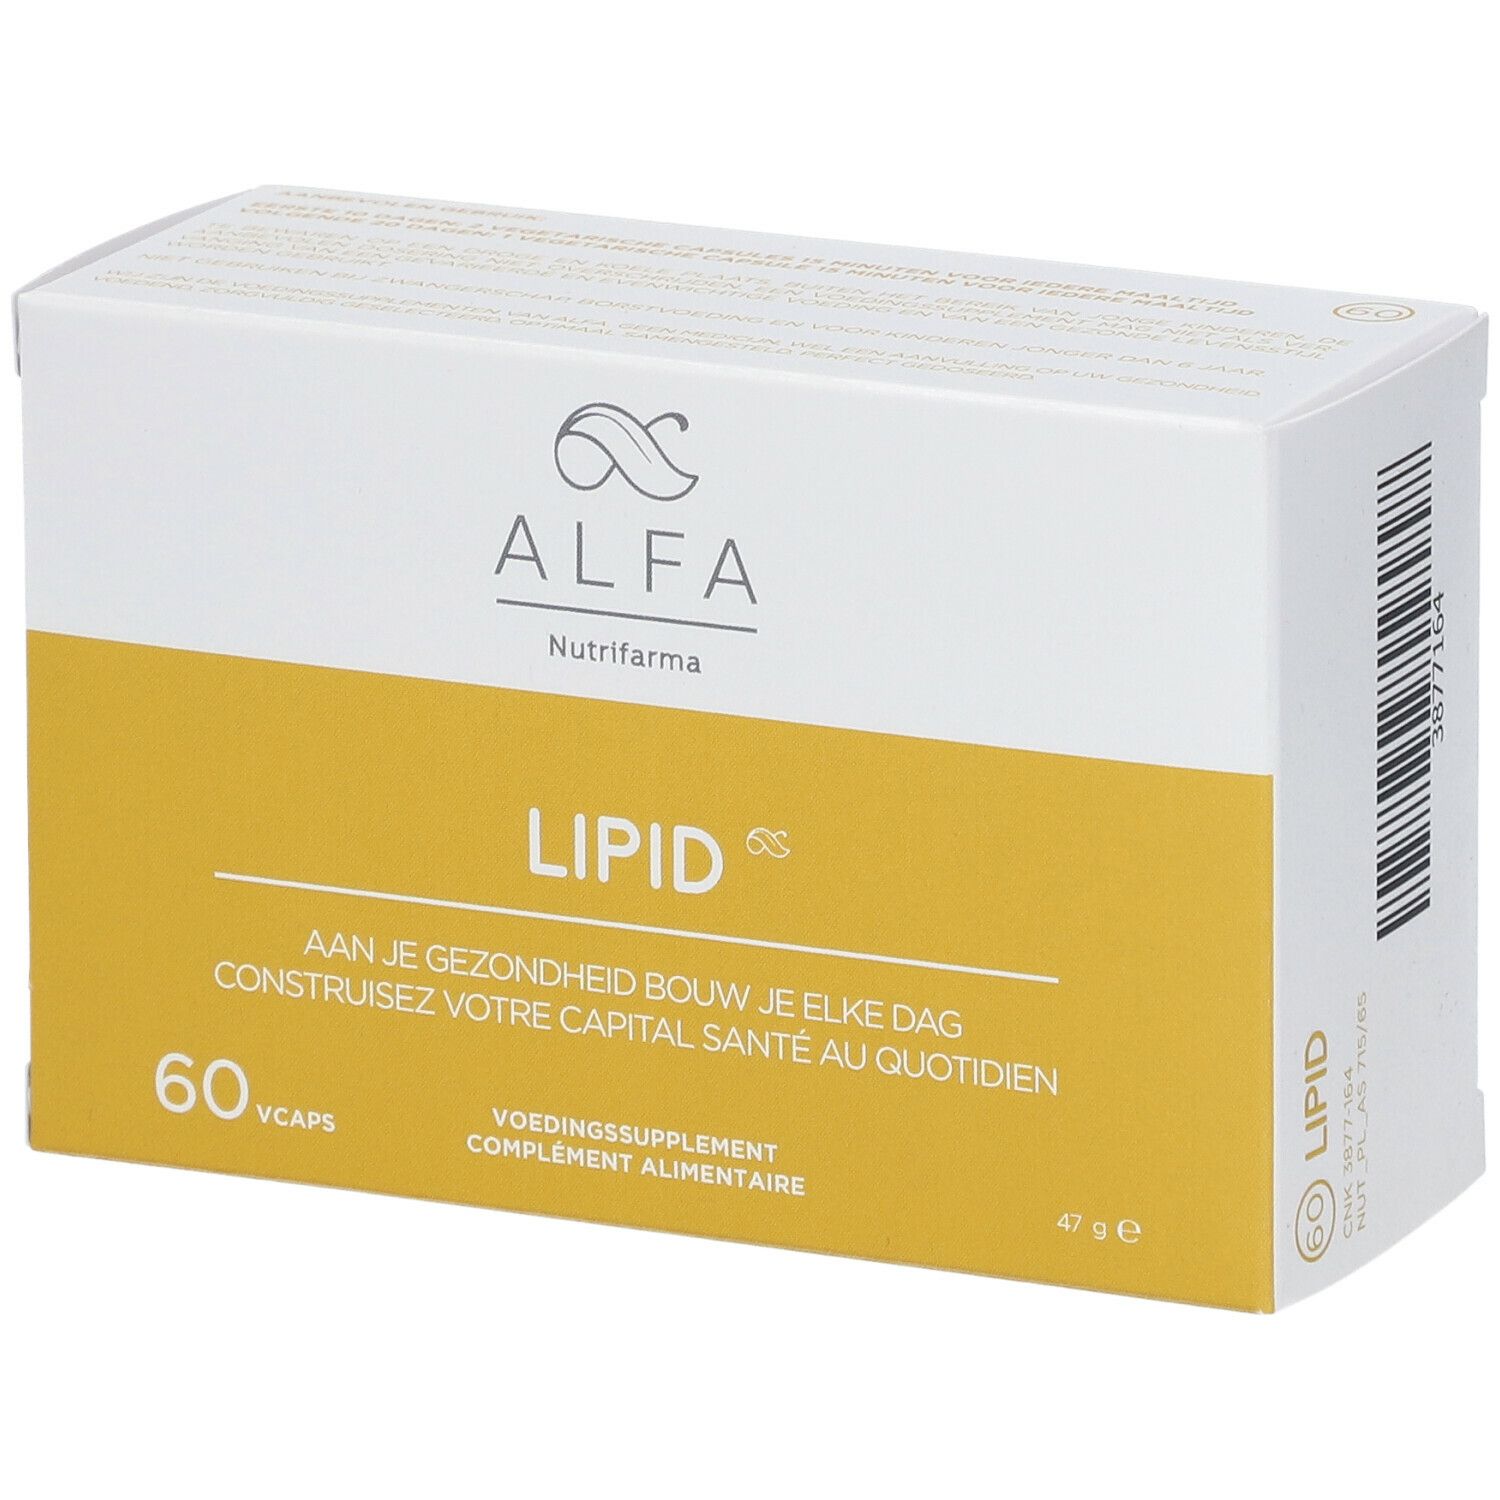 Alfa Lipid